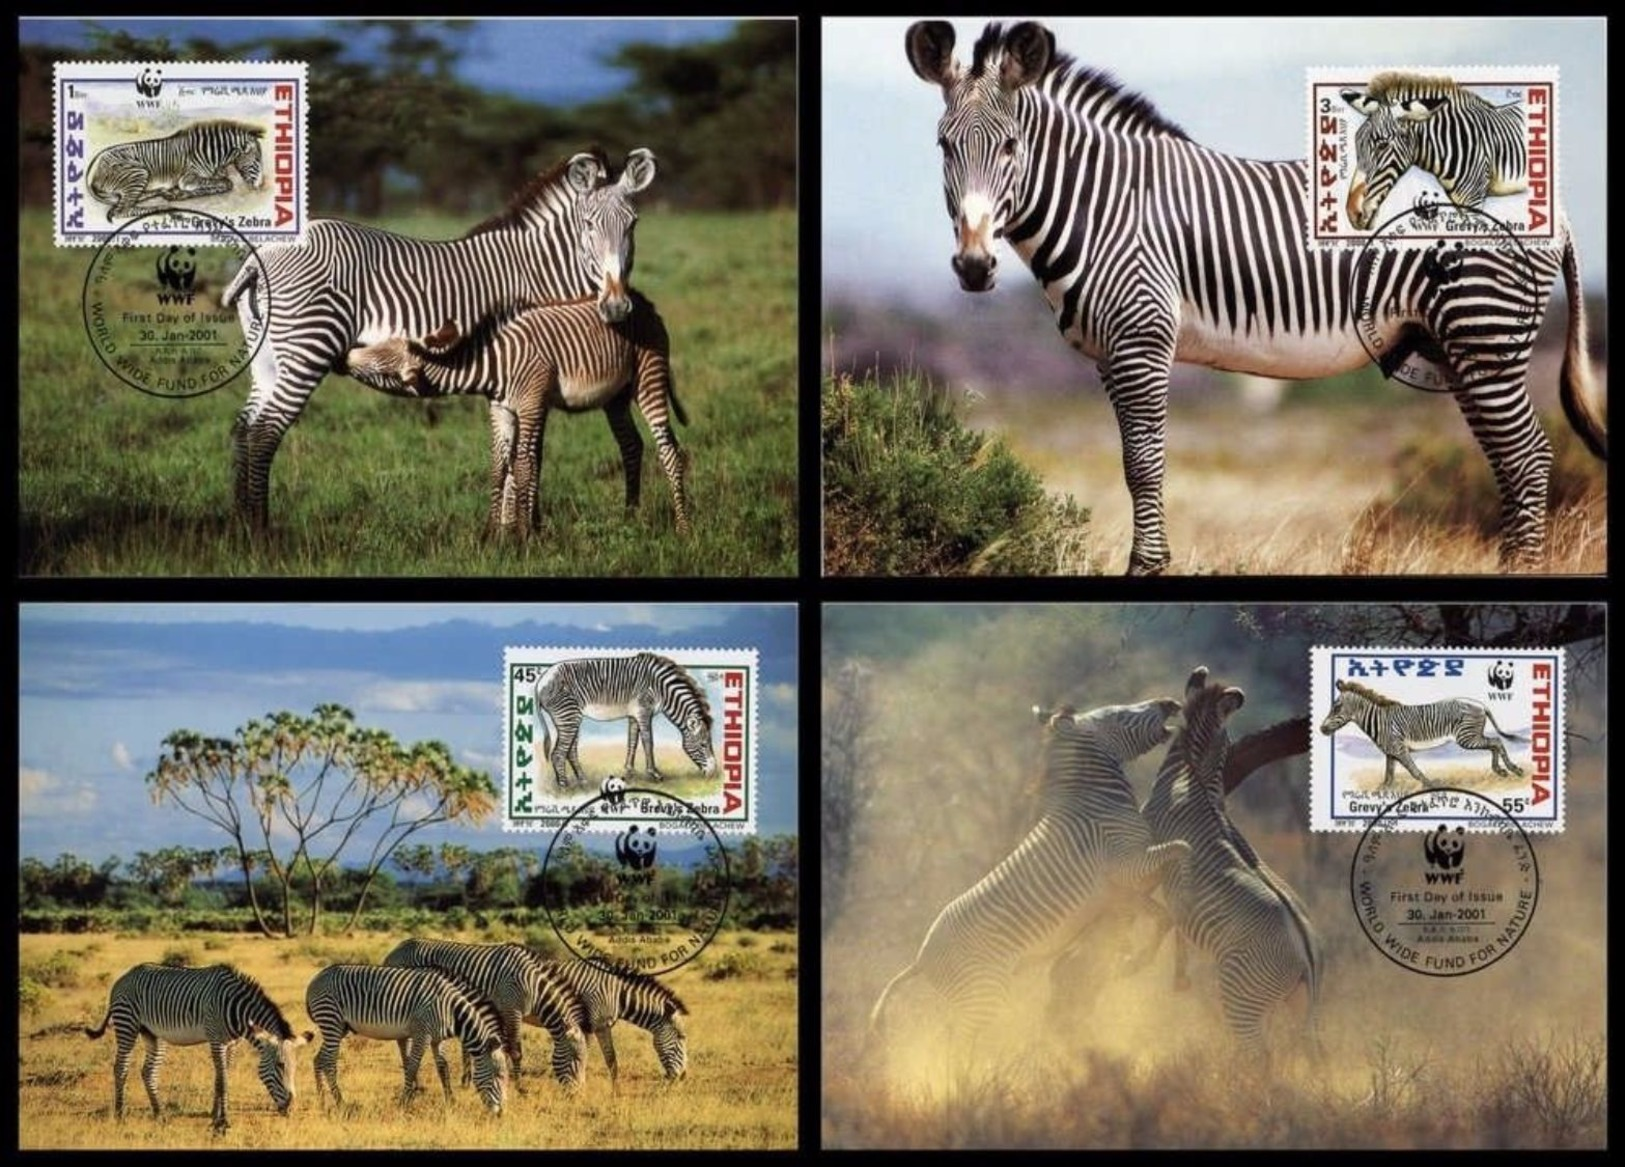 WWF Ethiopia Ethiopie Äthiopien Grevy´s Zebra Grevyzebra Zebre 2001 CM MC MK Maxi Card Carte Maximum Maxicards - Maximumkarten